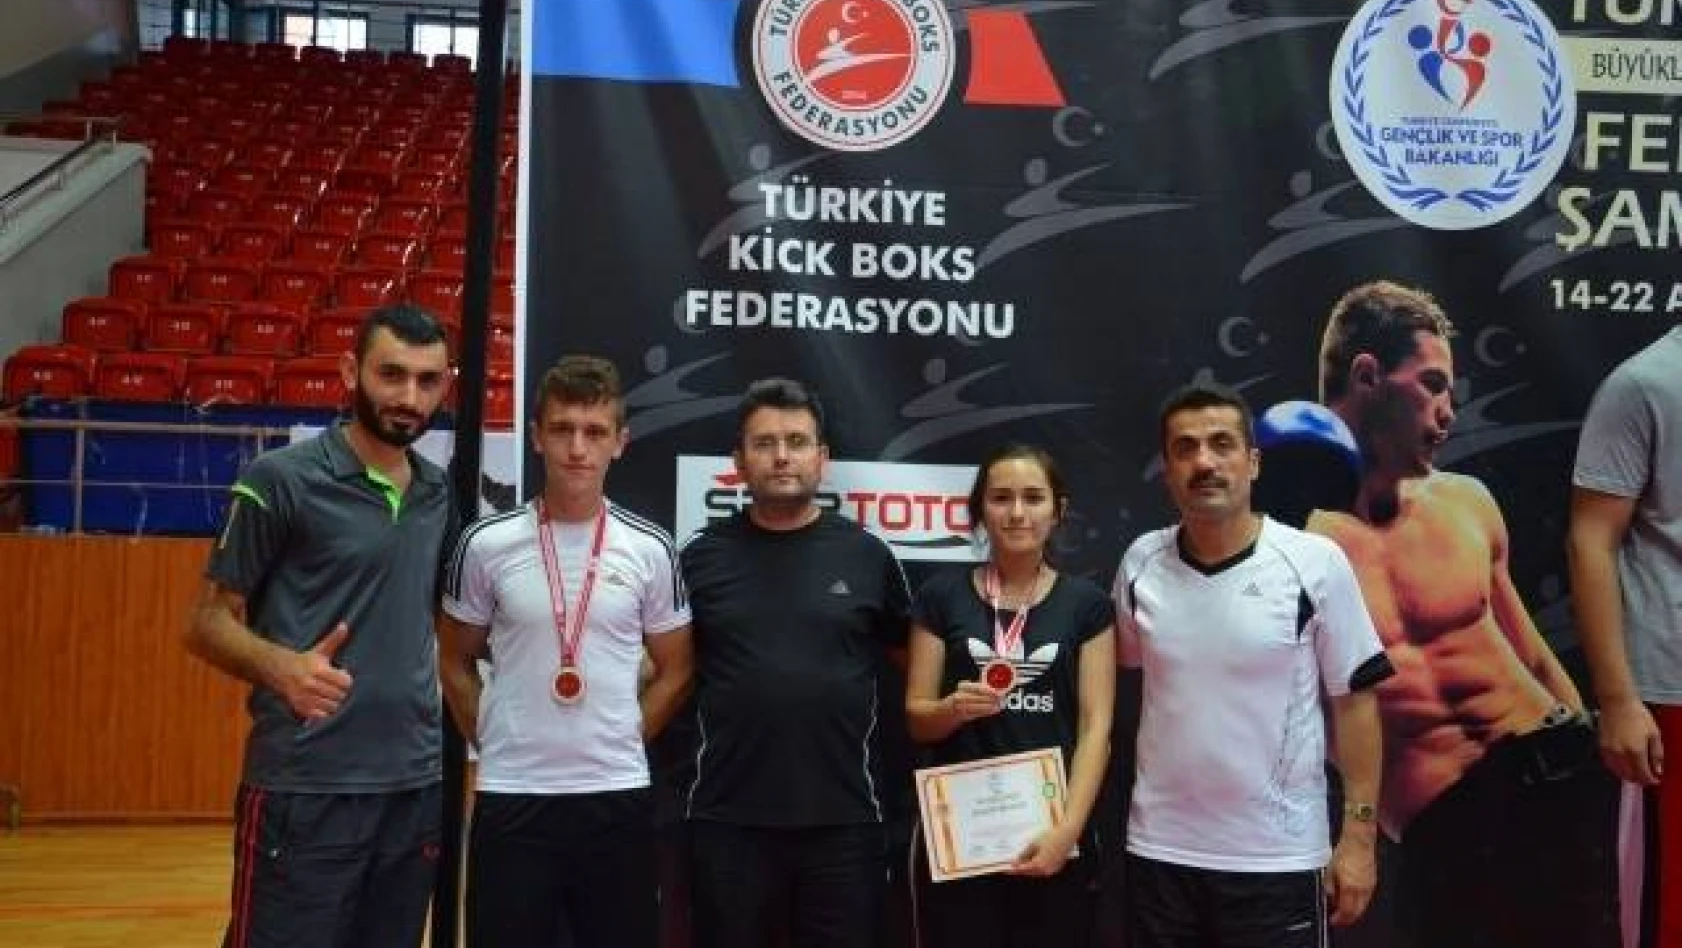 Ordu Türkiye Kick Boks Şampiyonası 14-22.08.2014